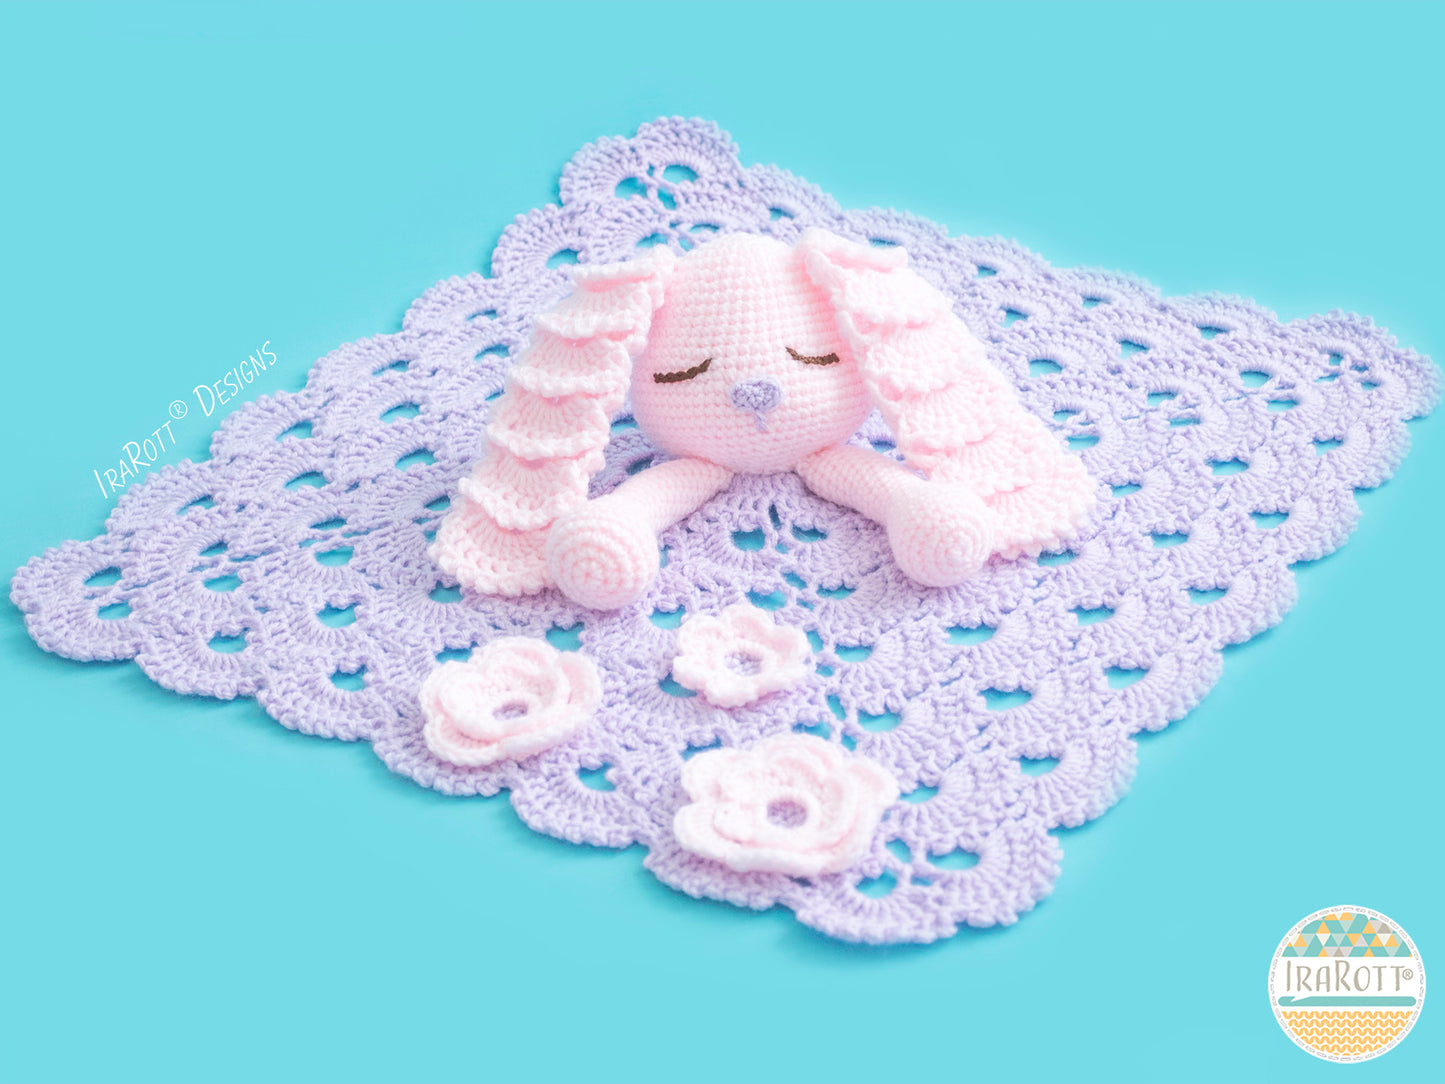 Sunny the Sleepy Bunny Lovey Crochet Pattern